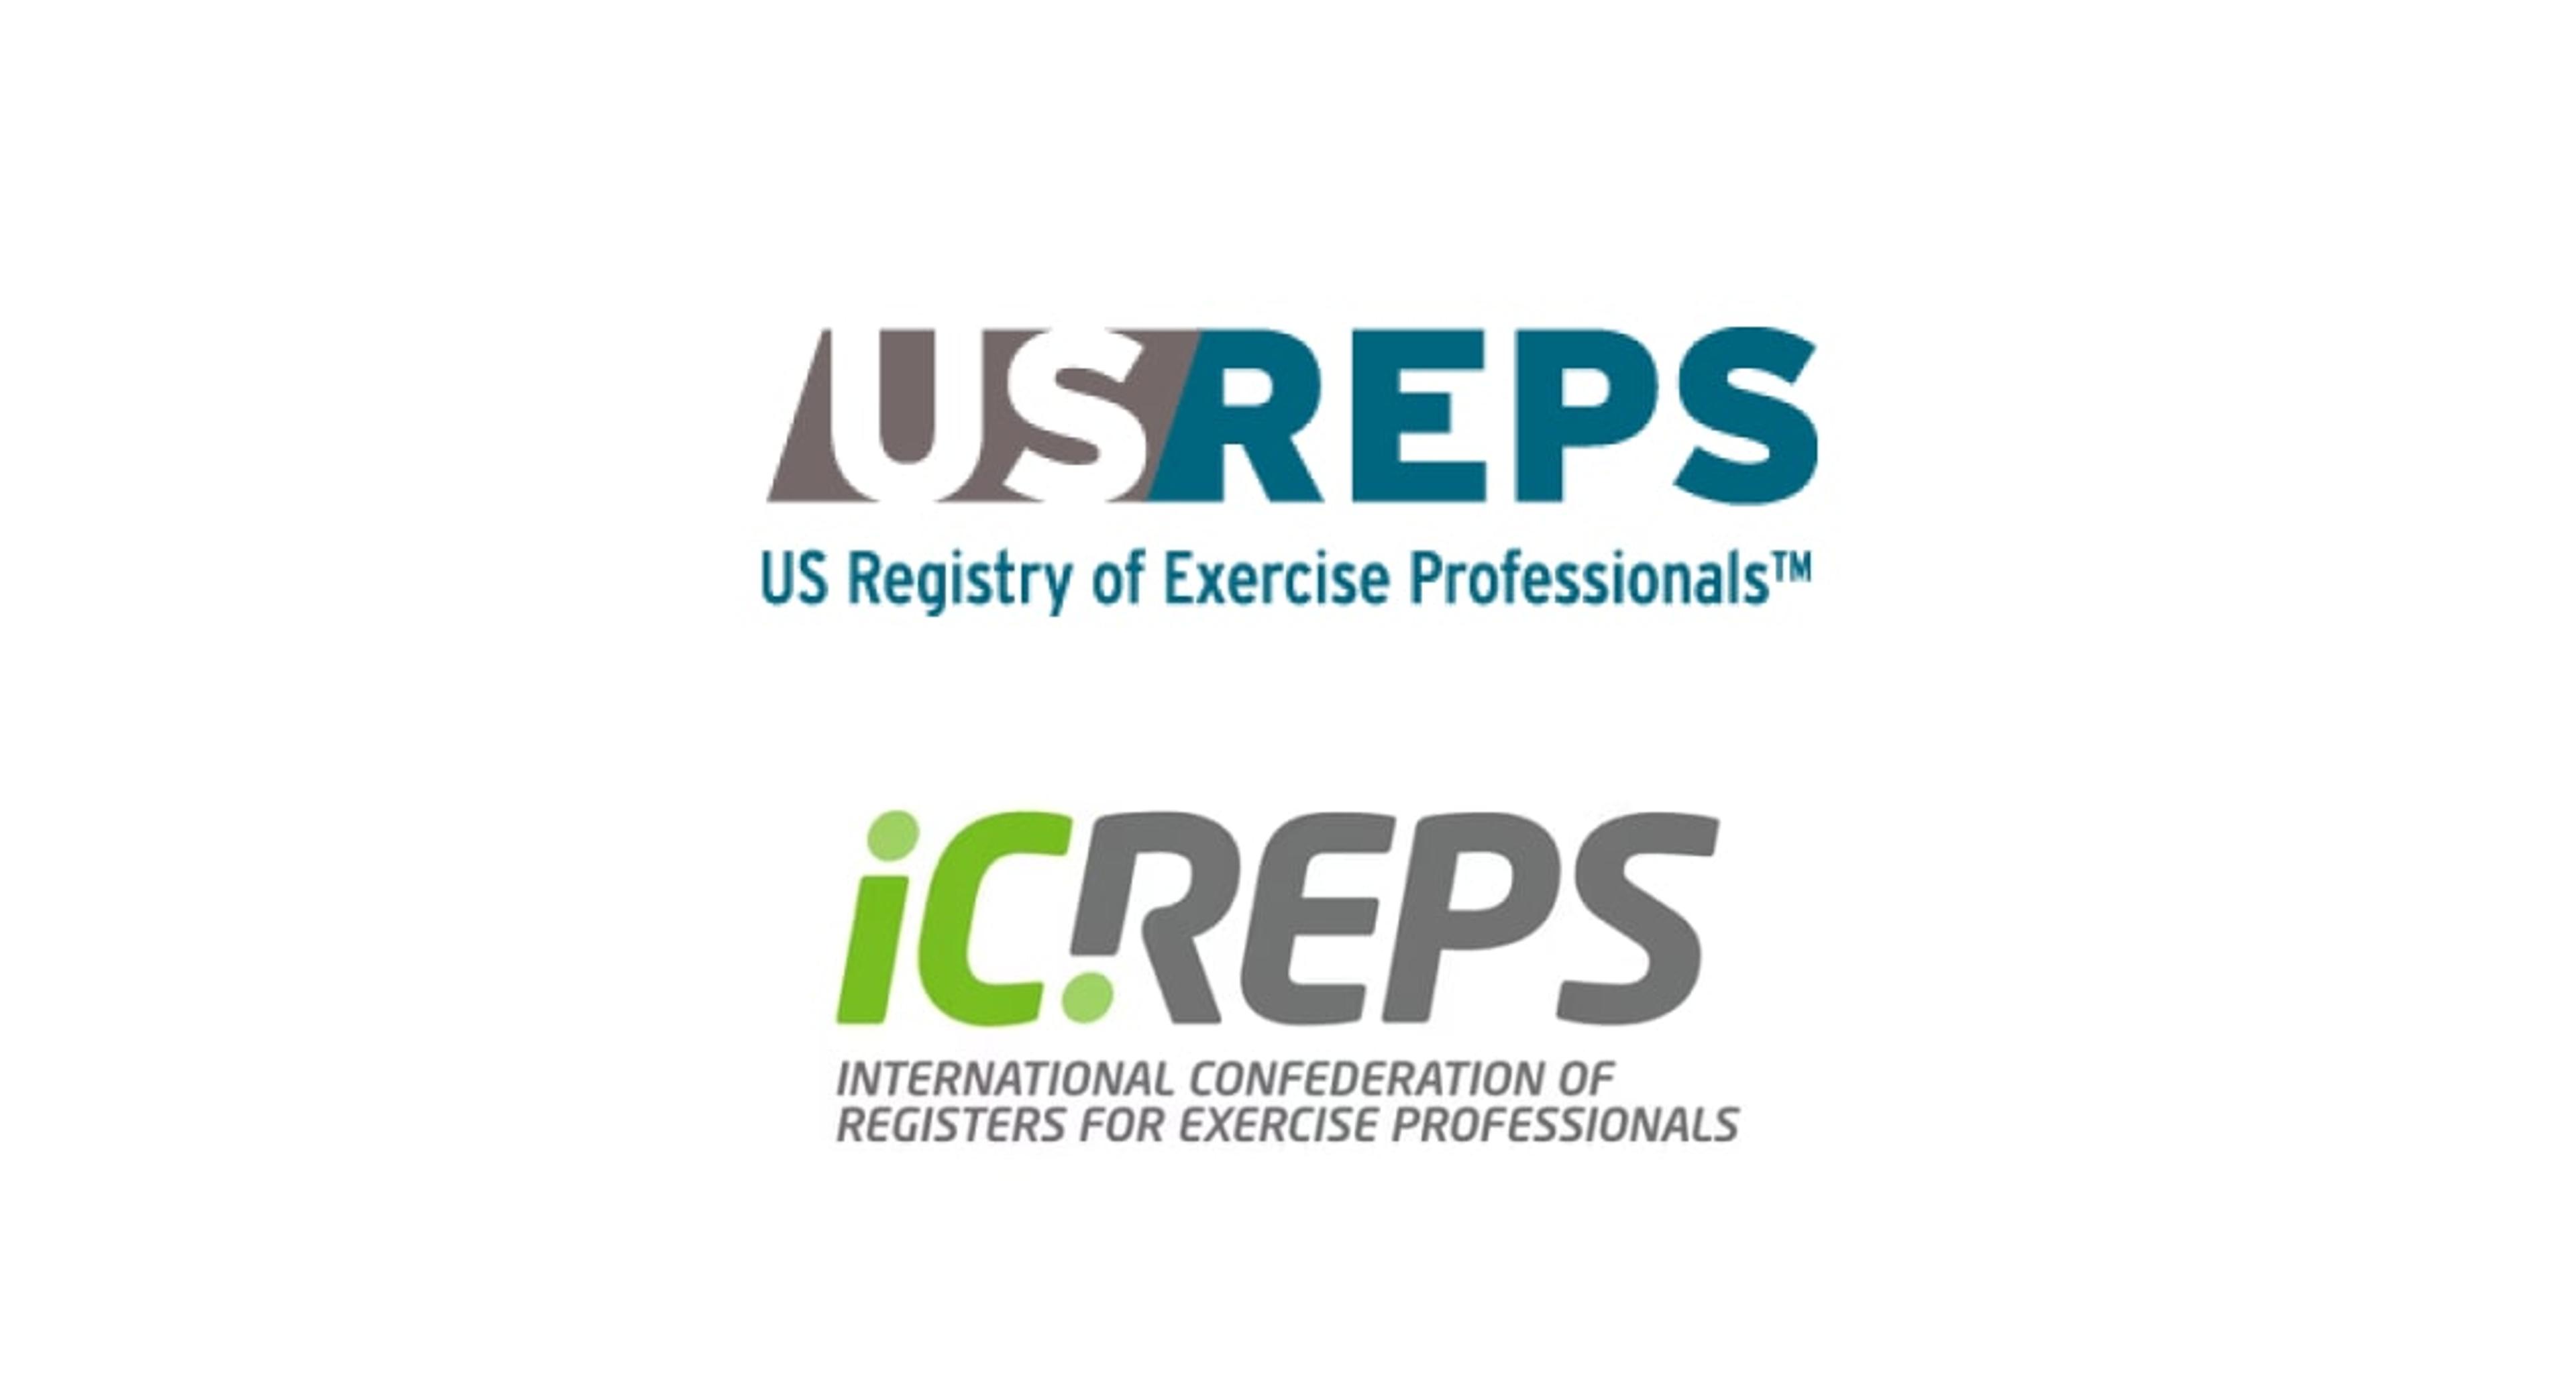 USREP/CREP logo images.